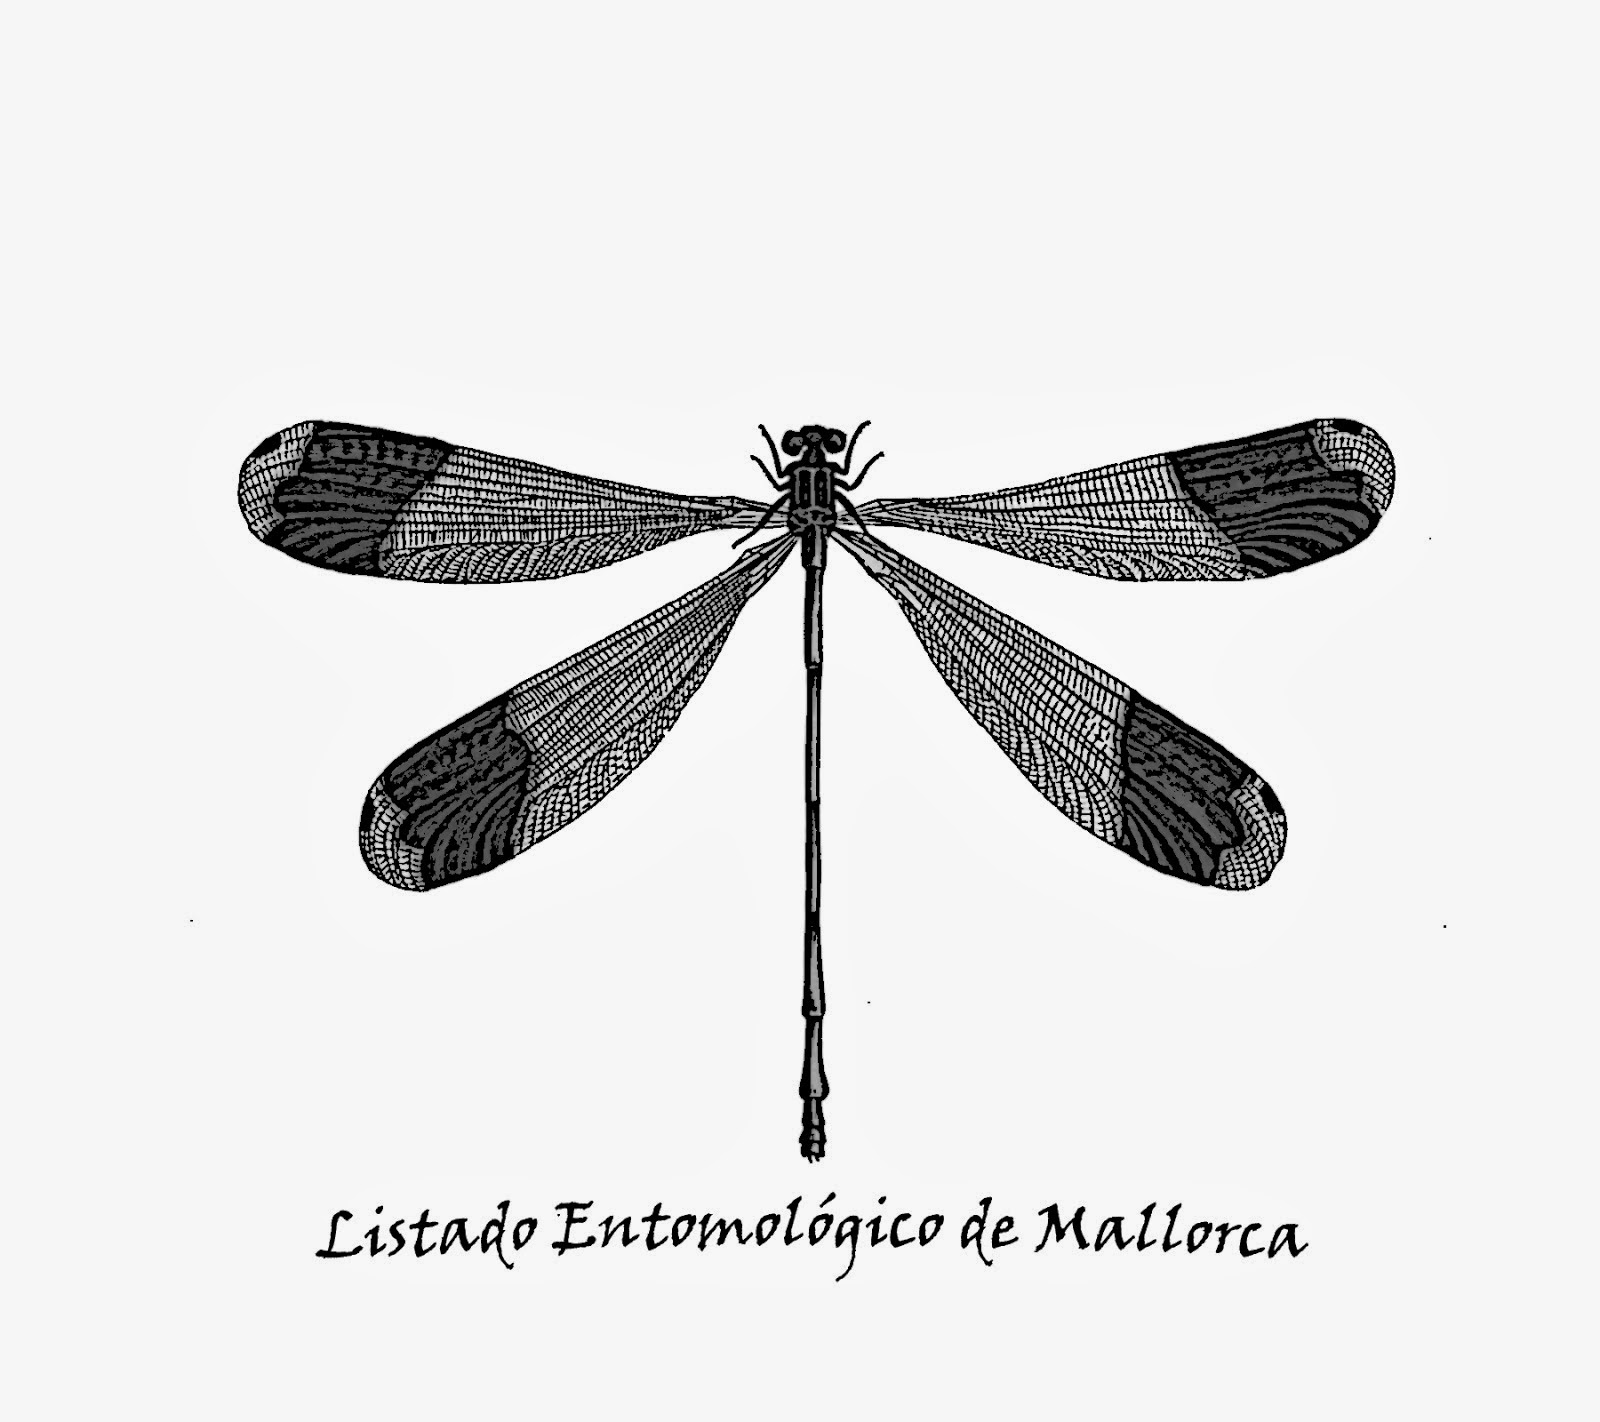 Listado Entomológico de Mallorca